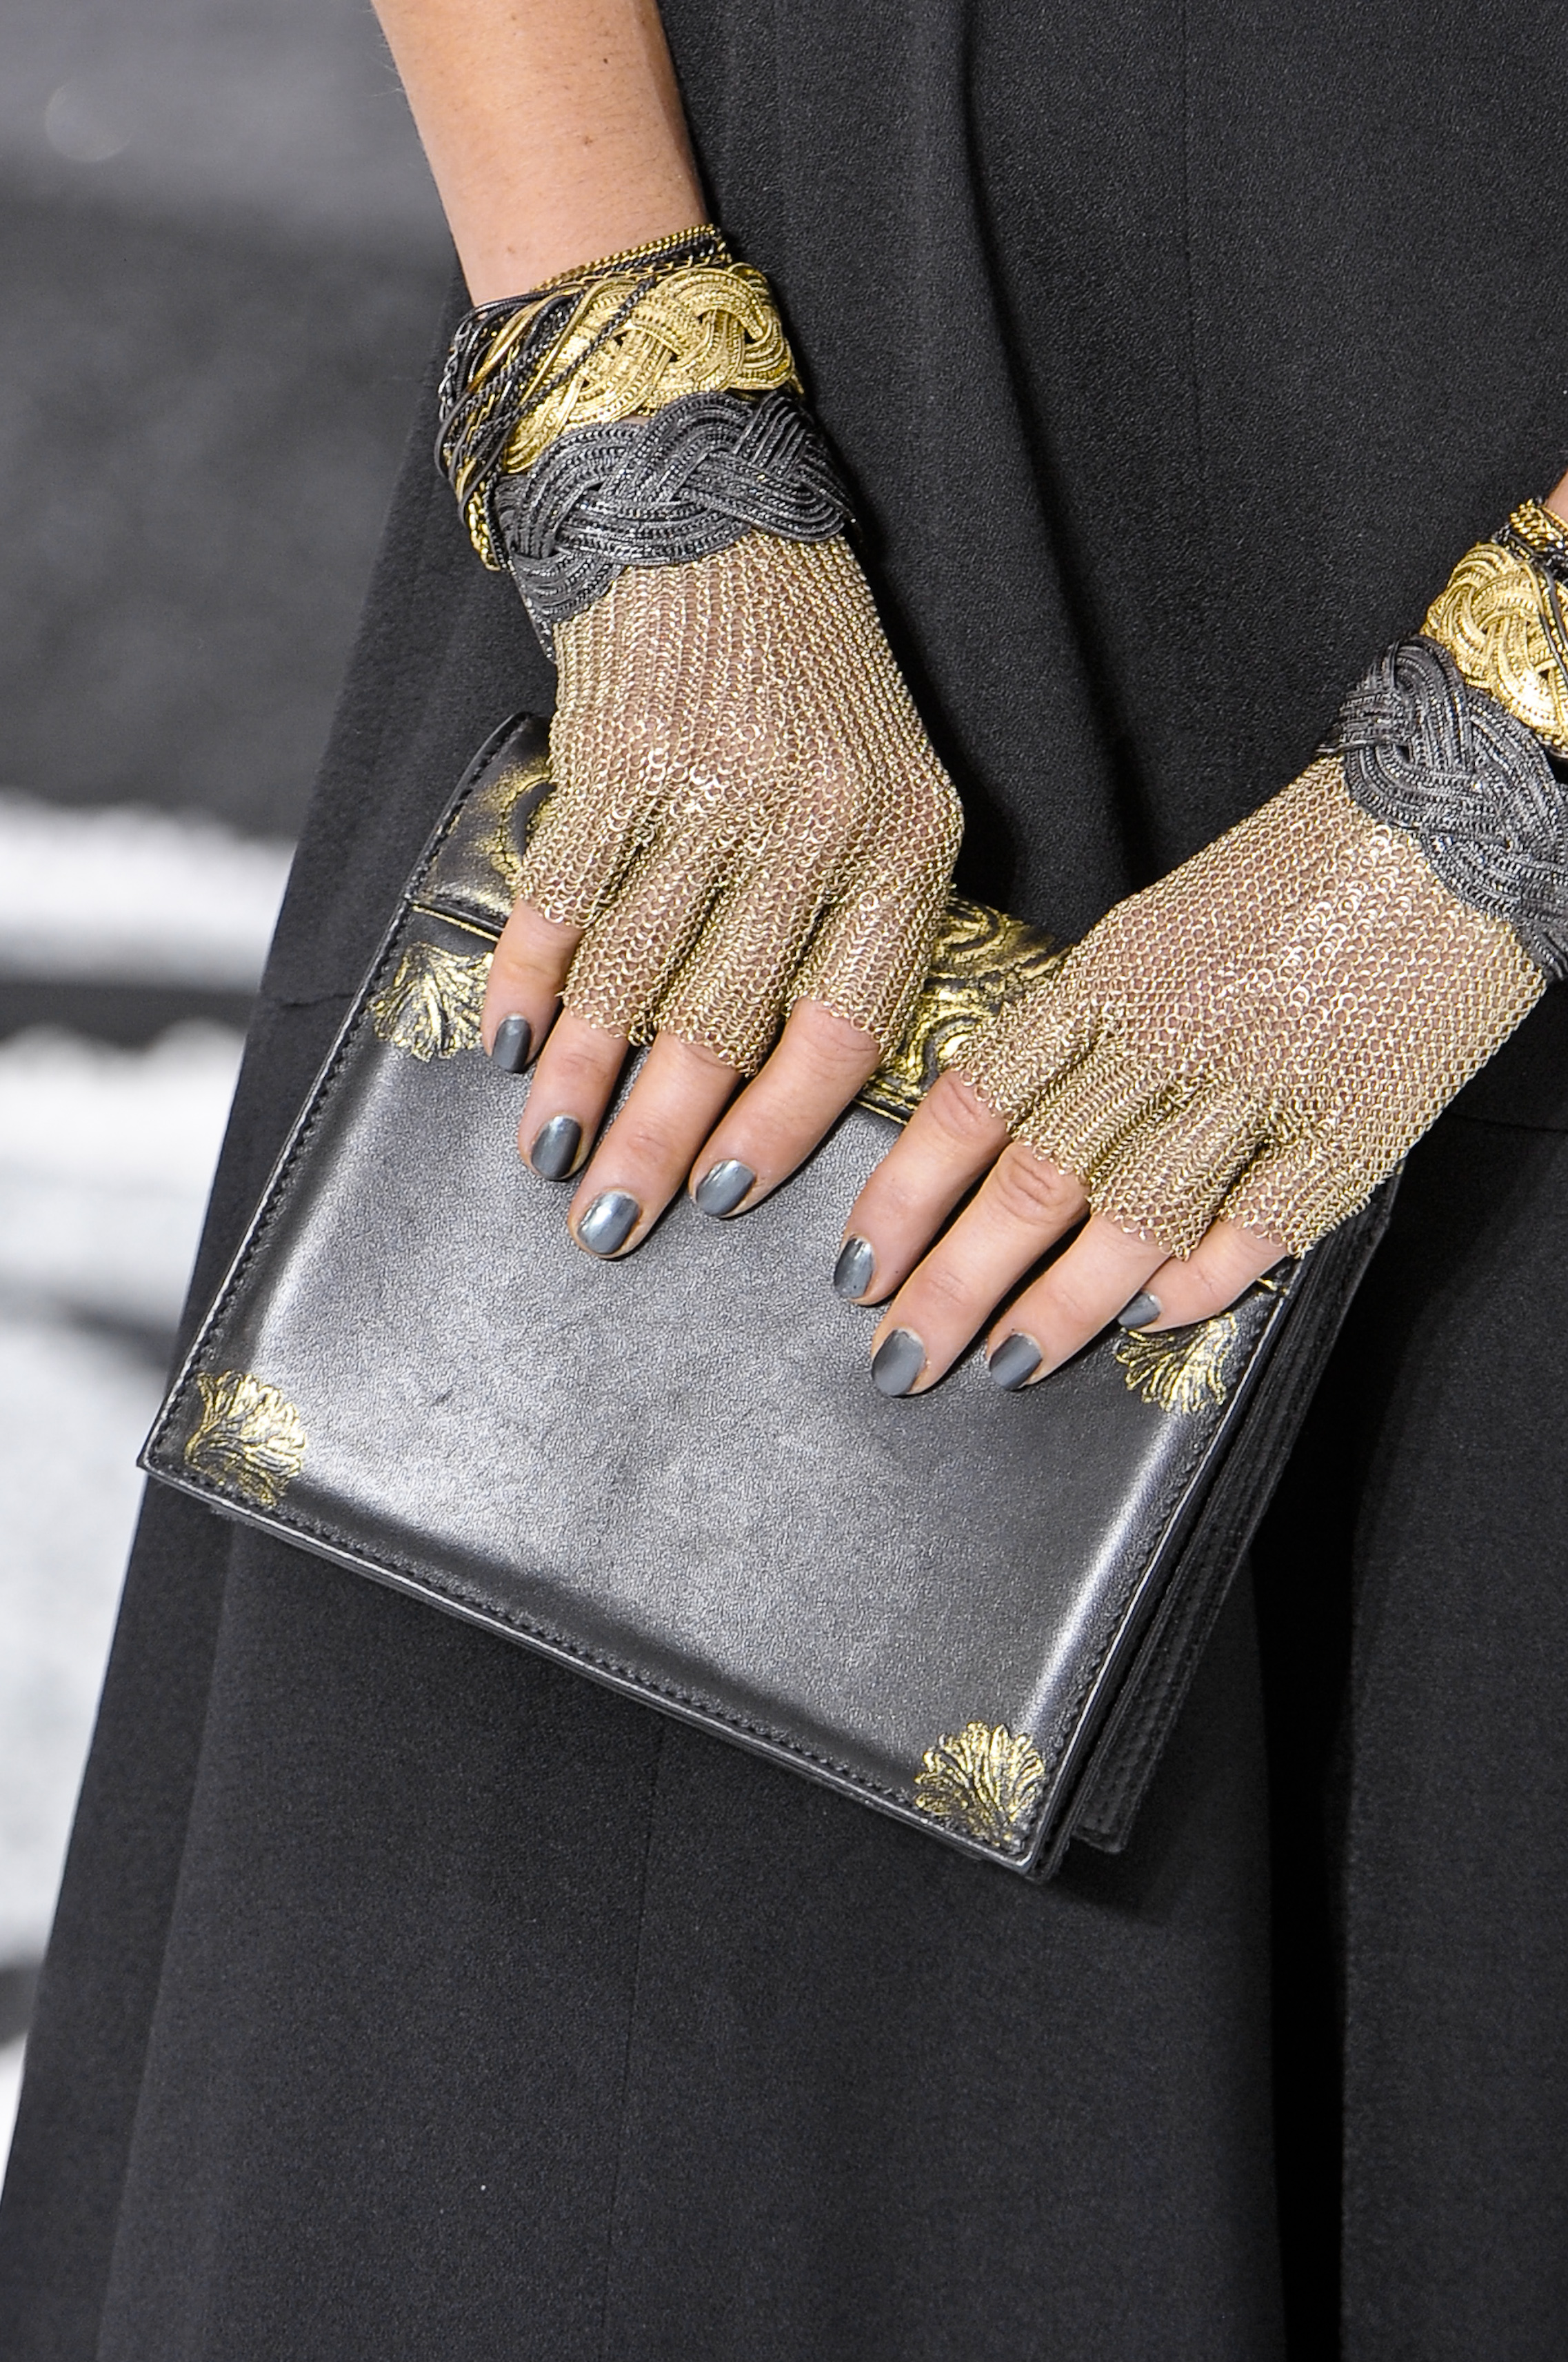 Chanel: Historia de los diseños de los bolsos más codiciados de la